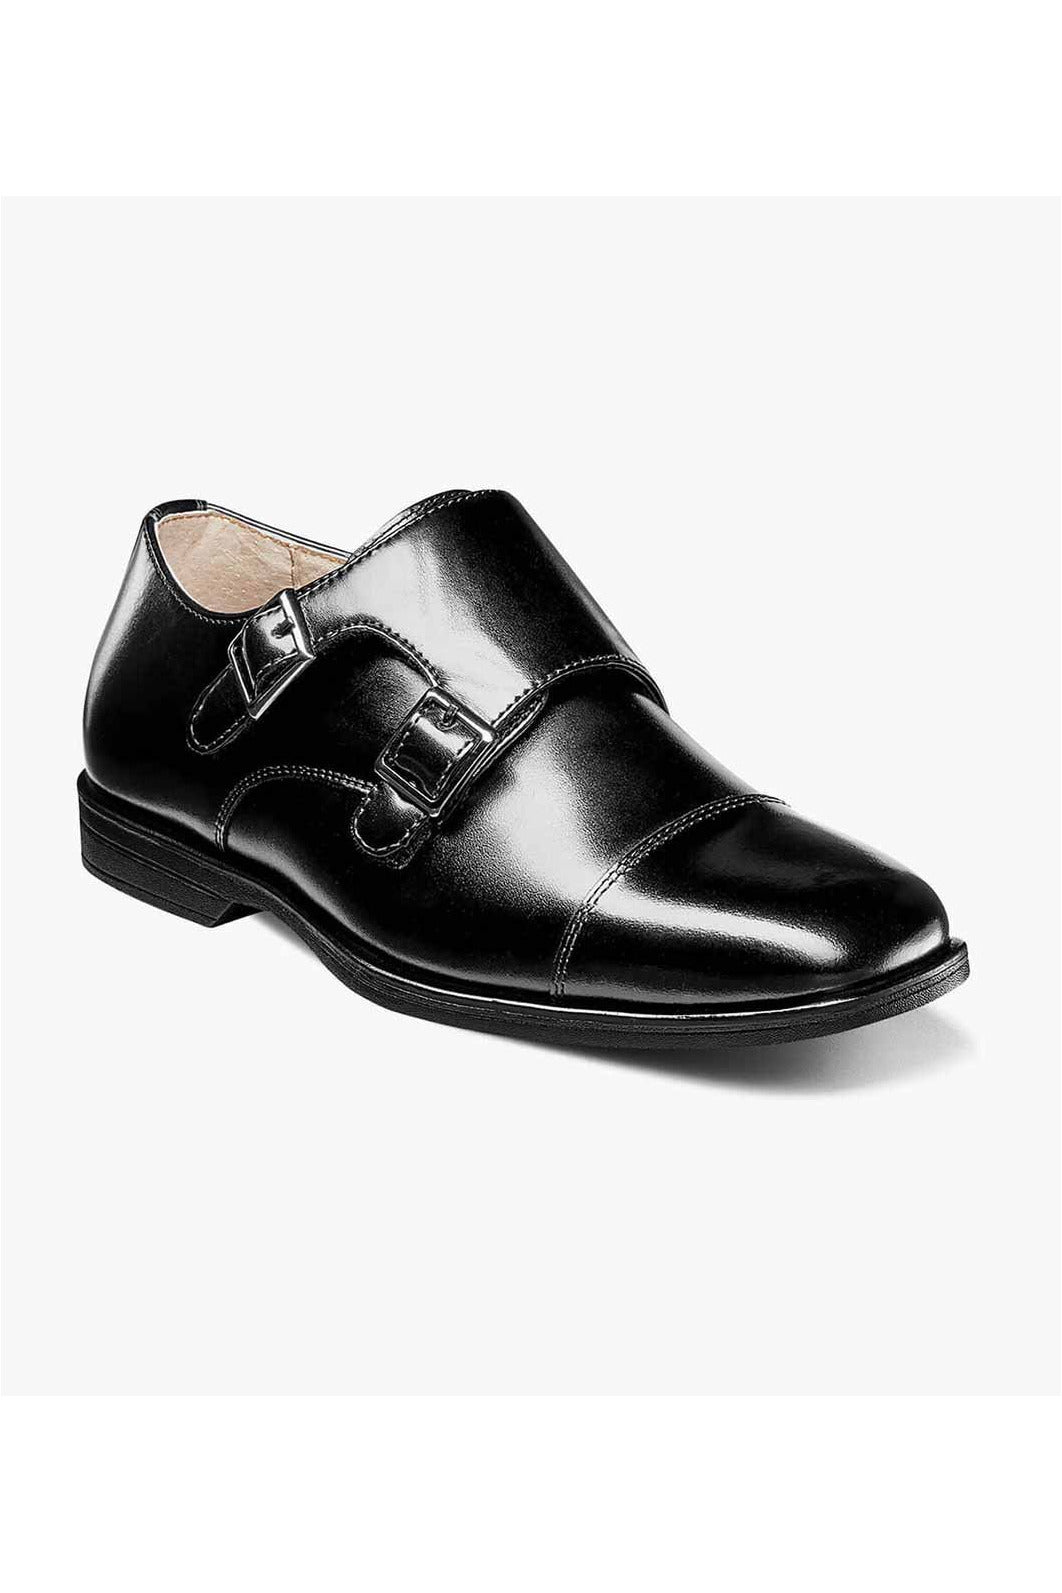 Florsheim Boys Dress Shoe Reveal Dbl Monk 16596-001 Black *